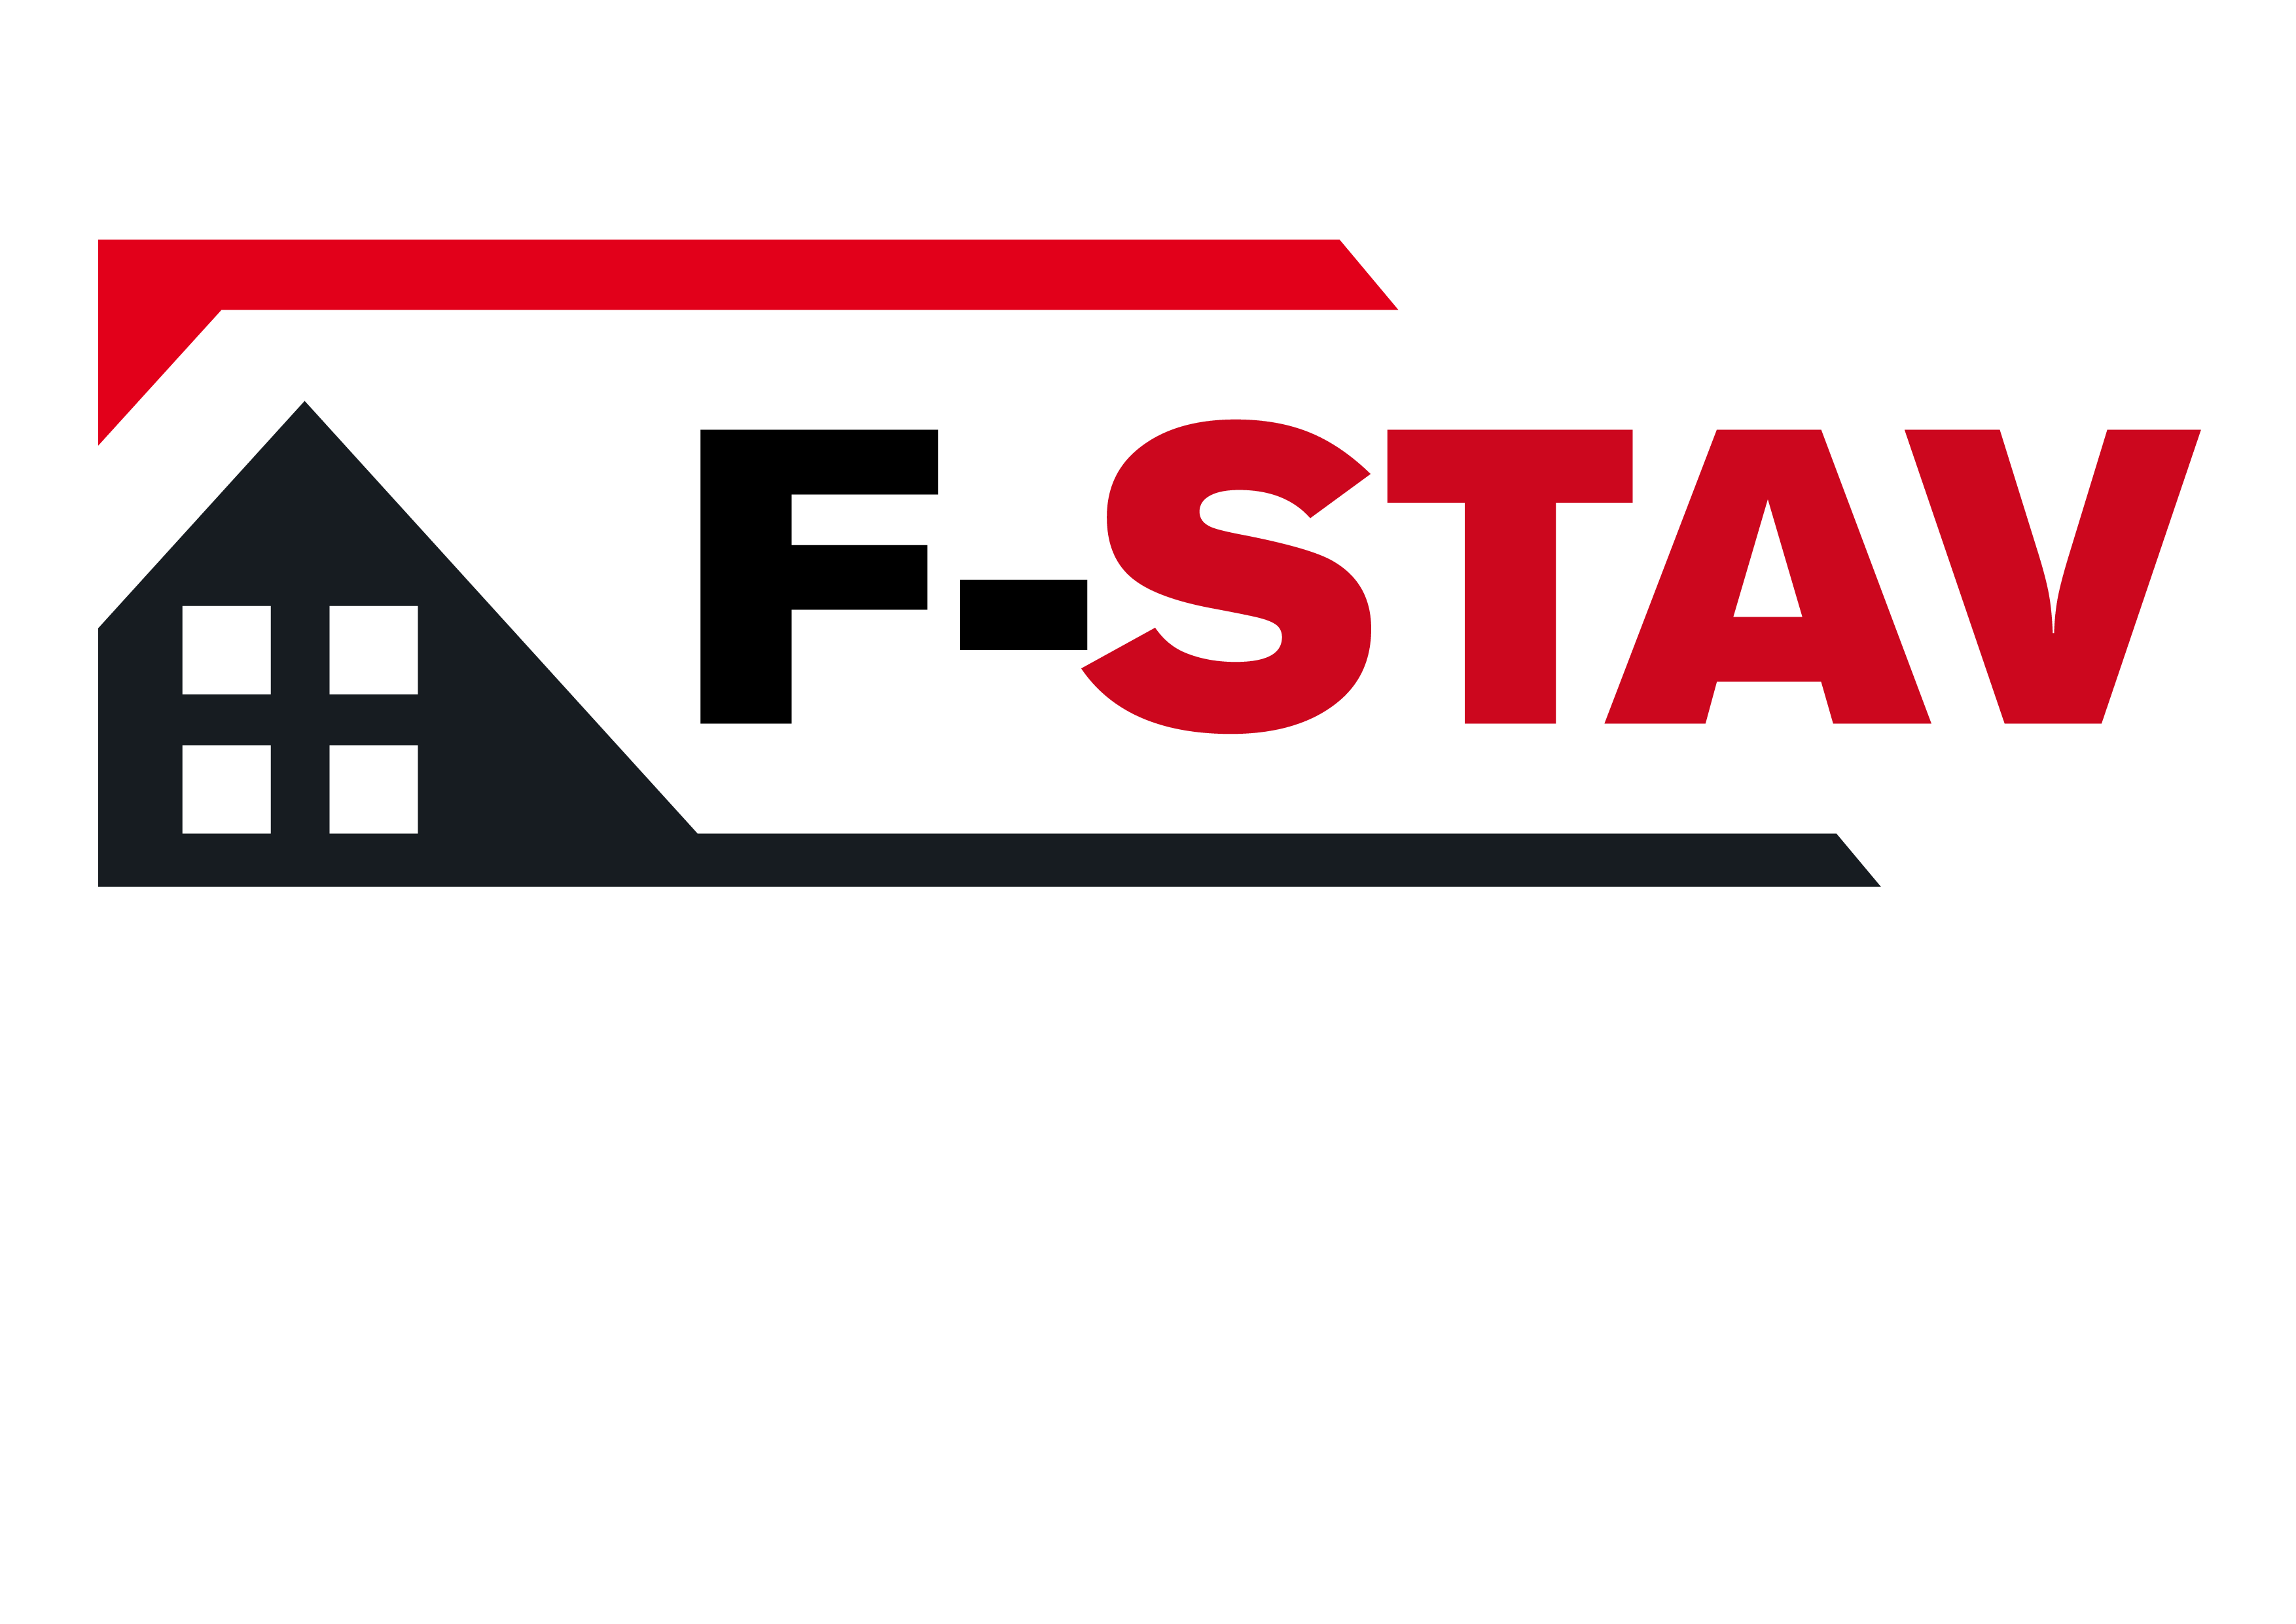 FSTAV